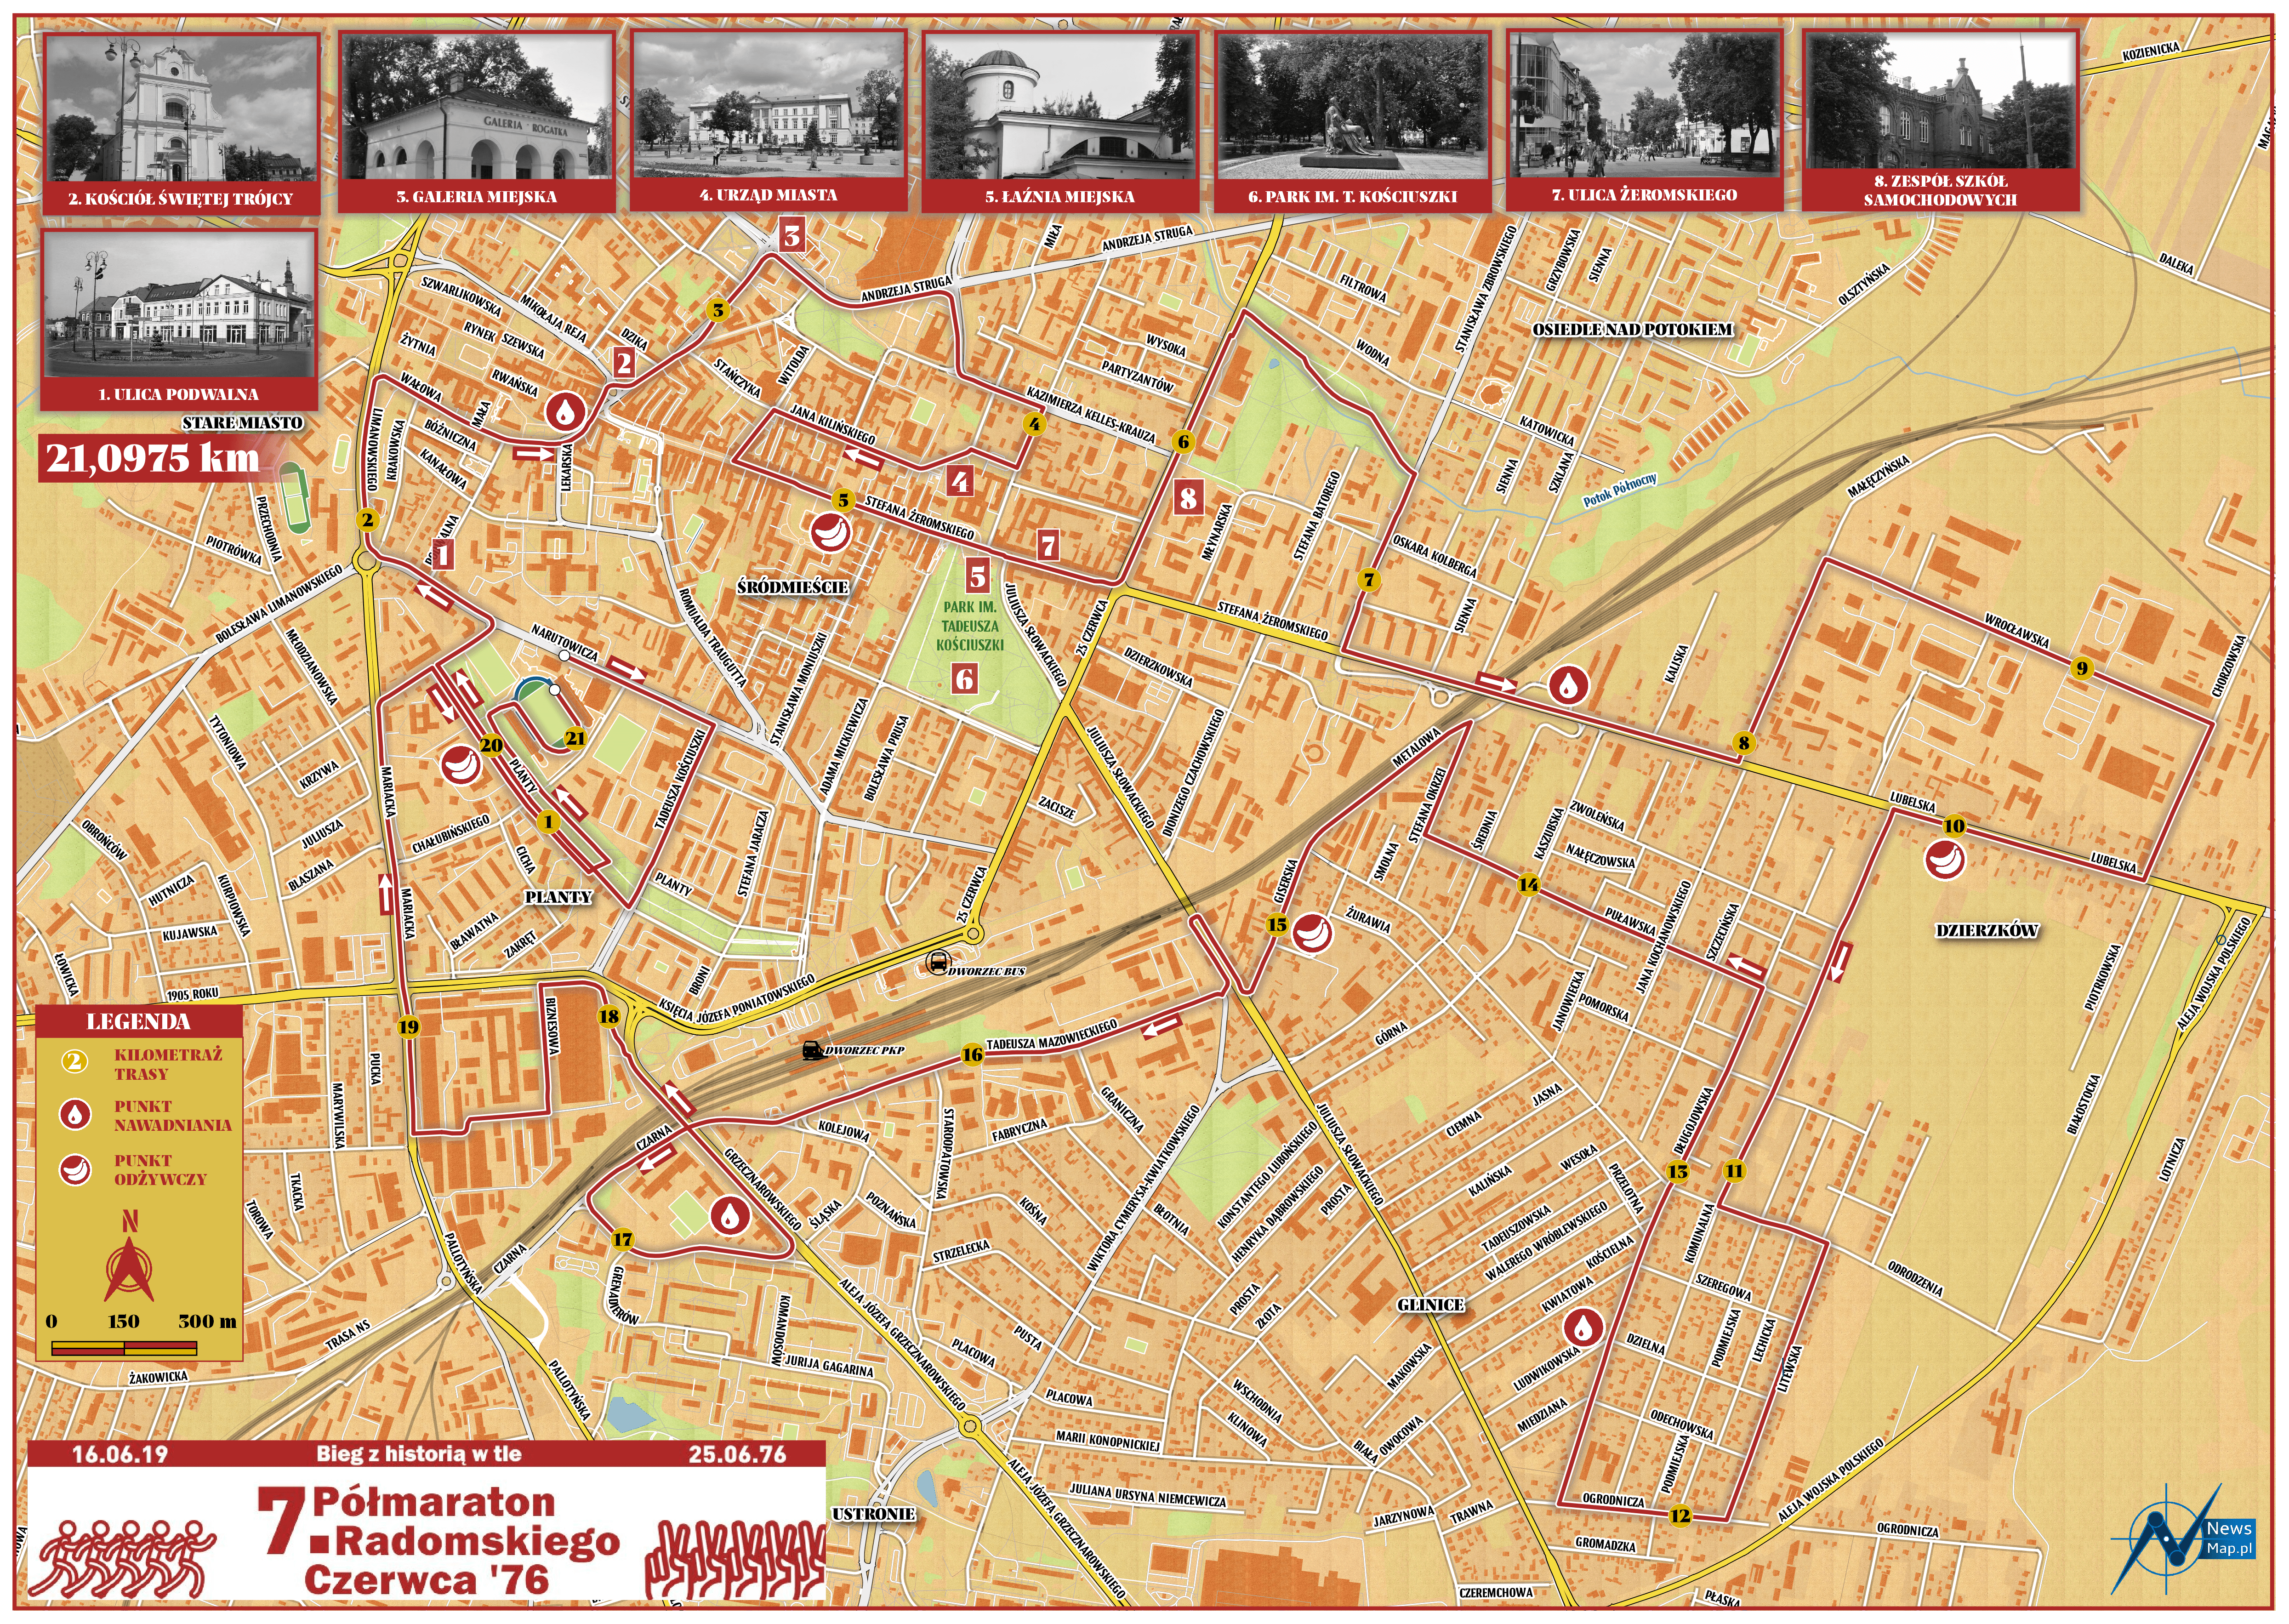 7. Półmaraton Radomskiego Czerwca '76 (mapa historyczna)